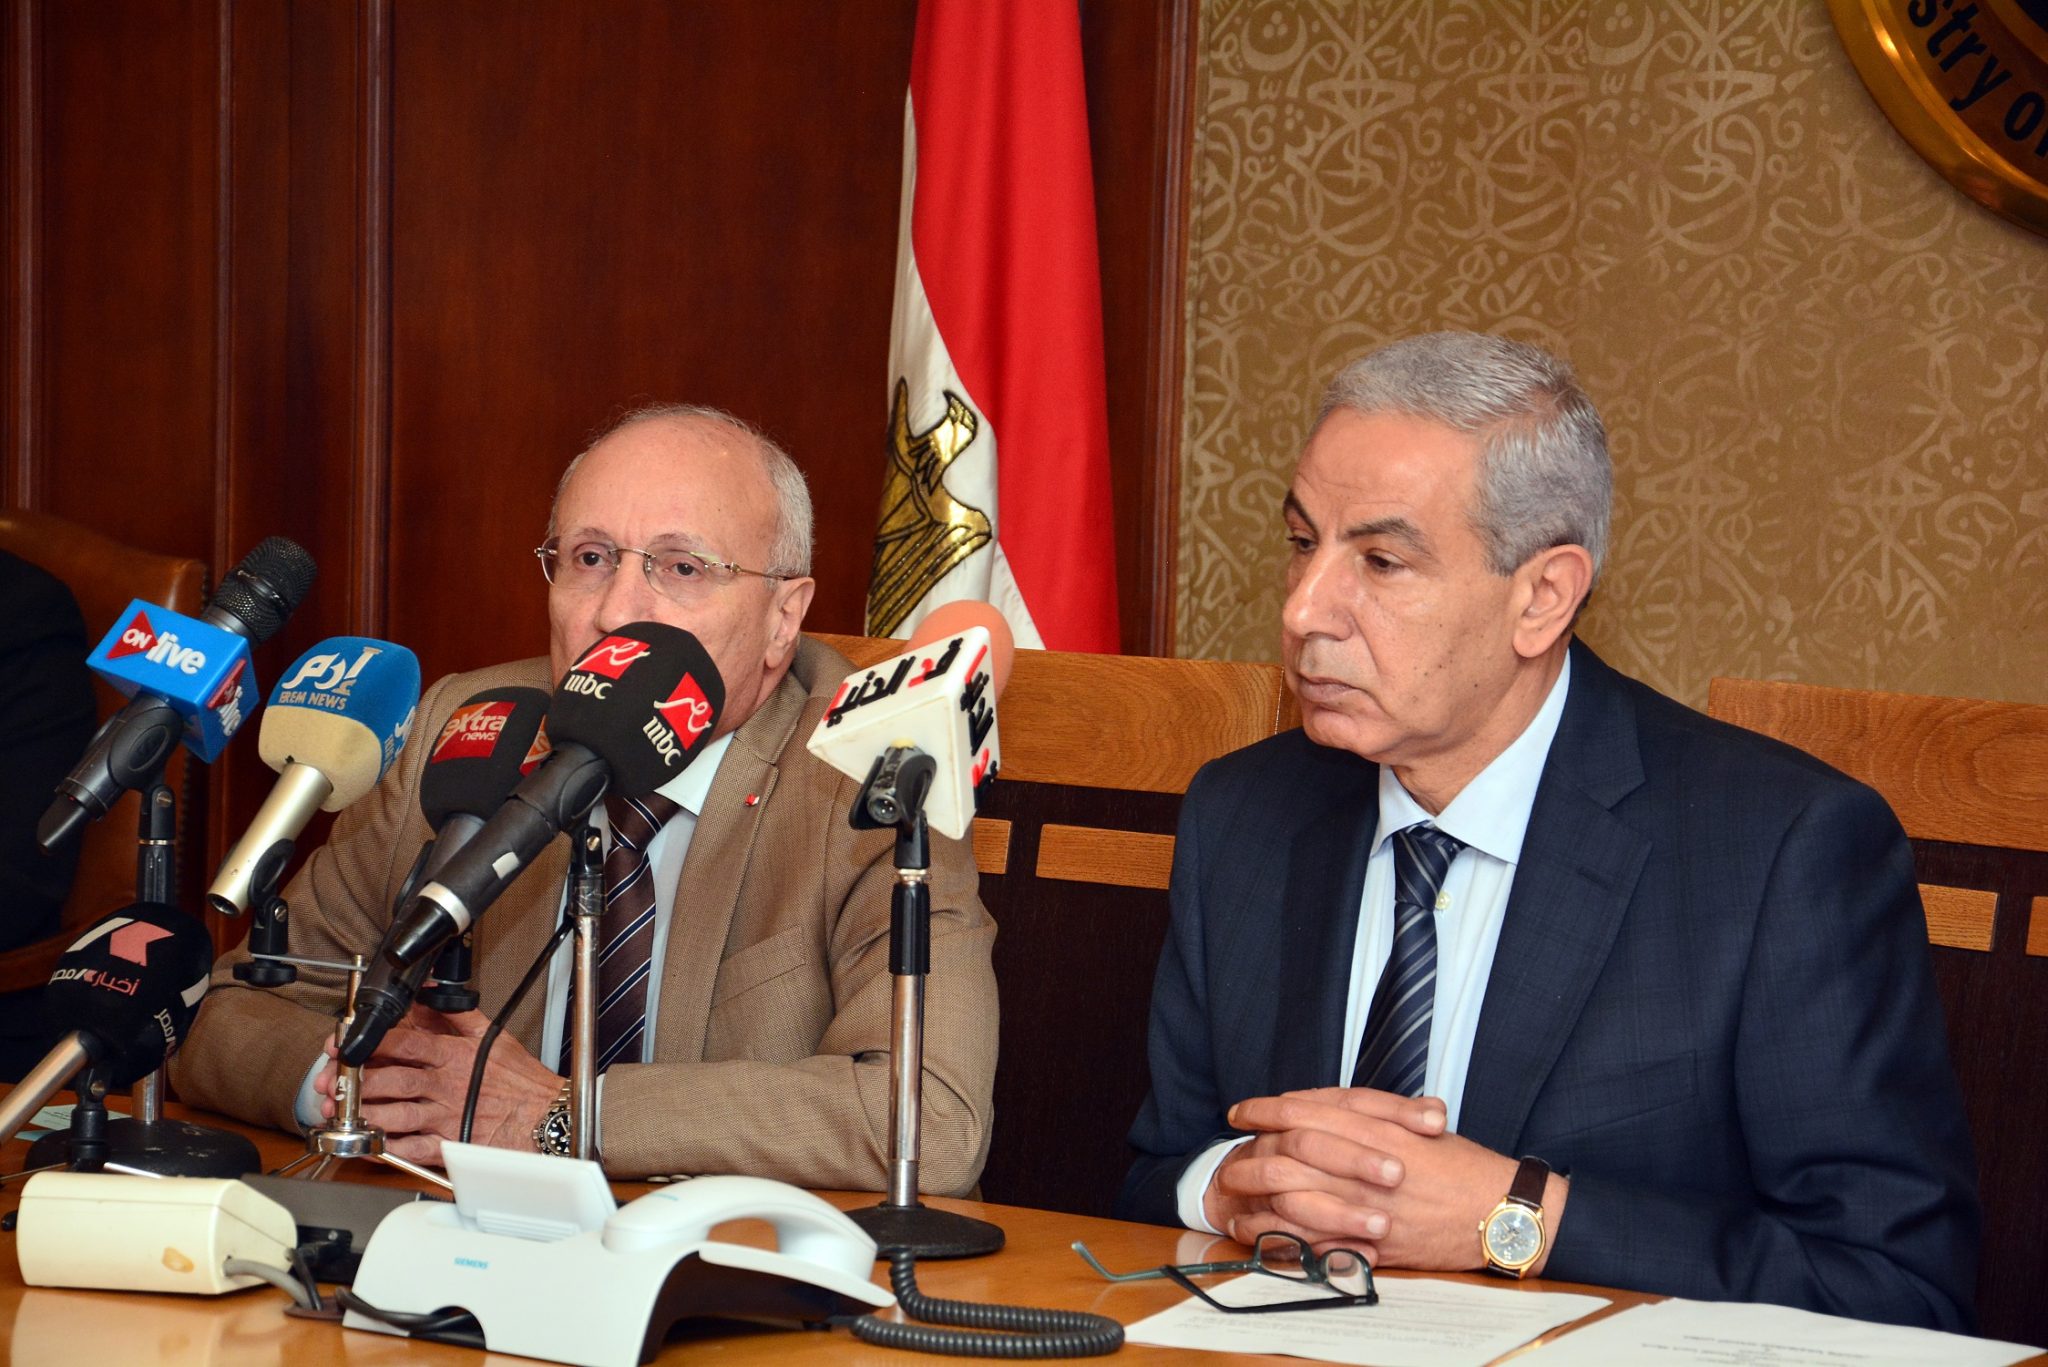   وزيرا التجارة والانتاج الحربي يوقعان 3 بروتوكولات في مجال تنمية الصناعة المصرية